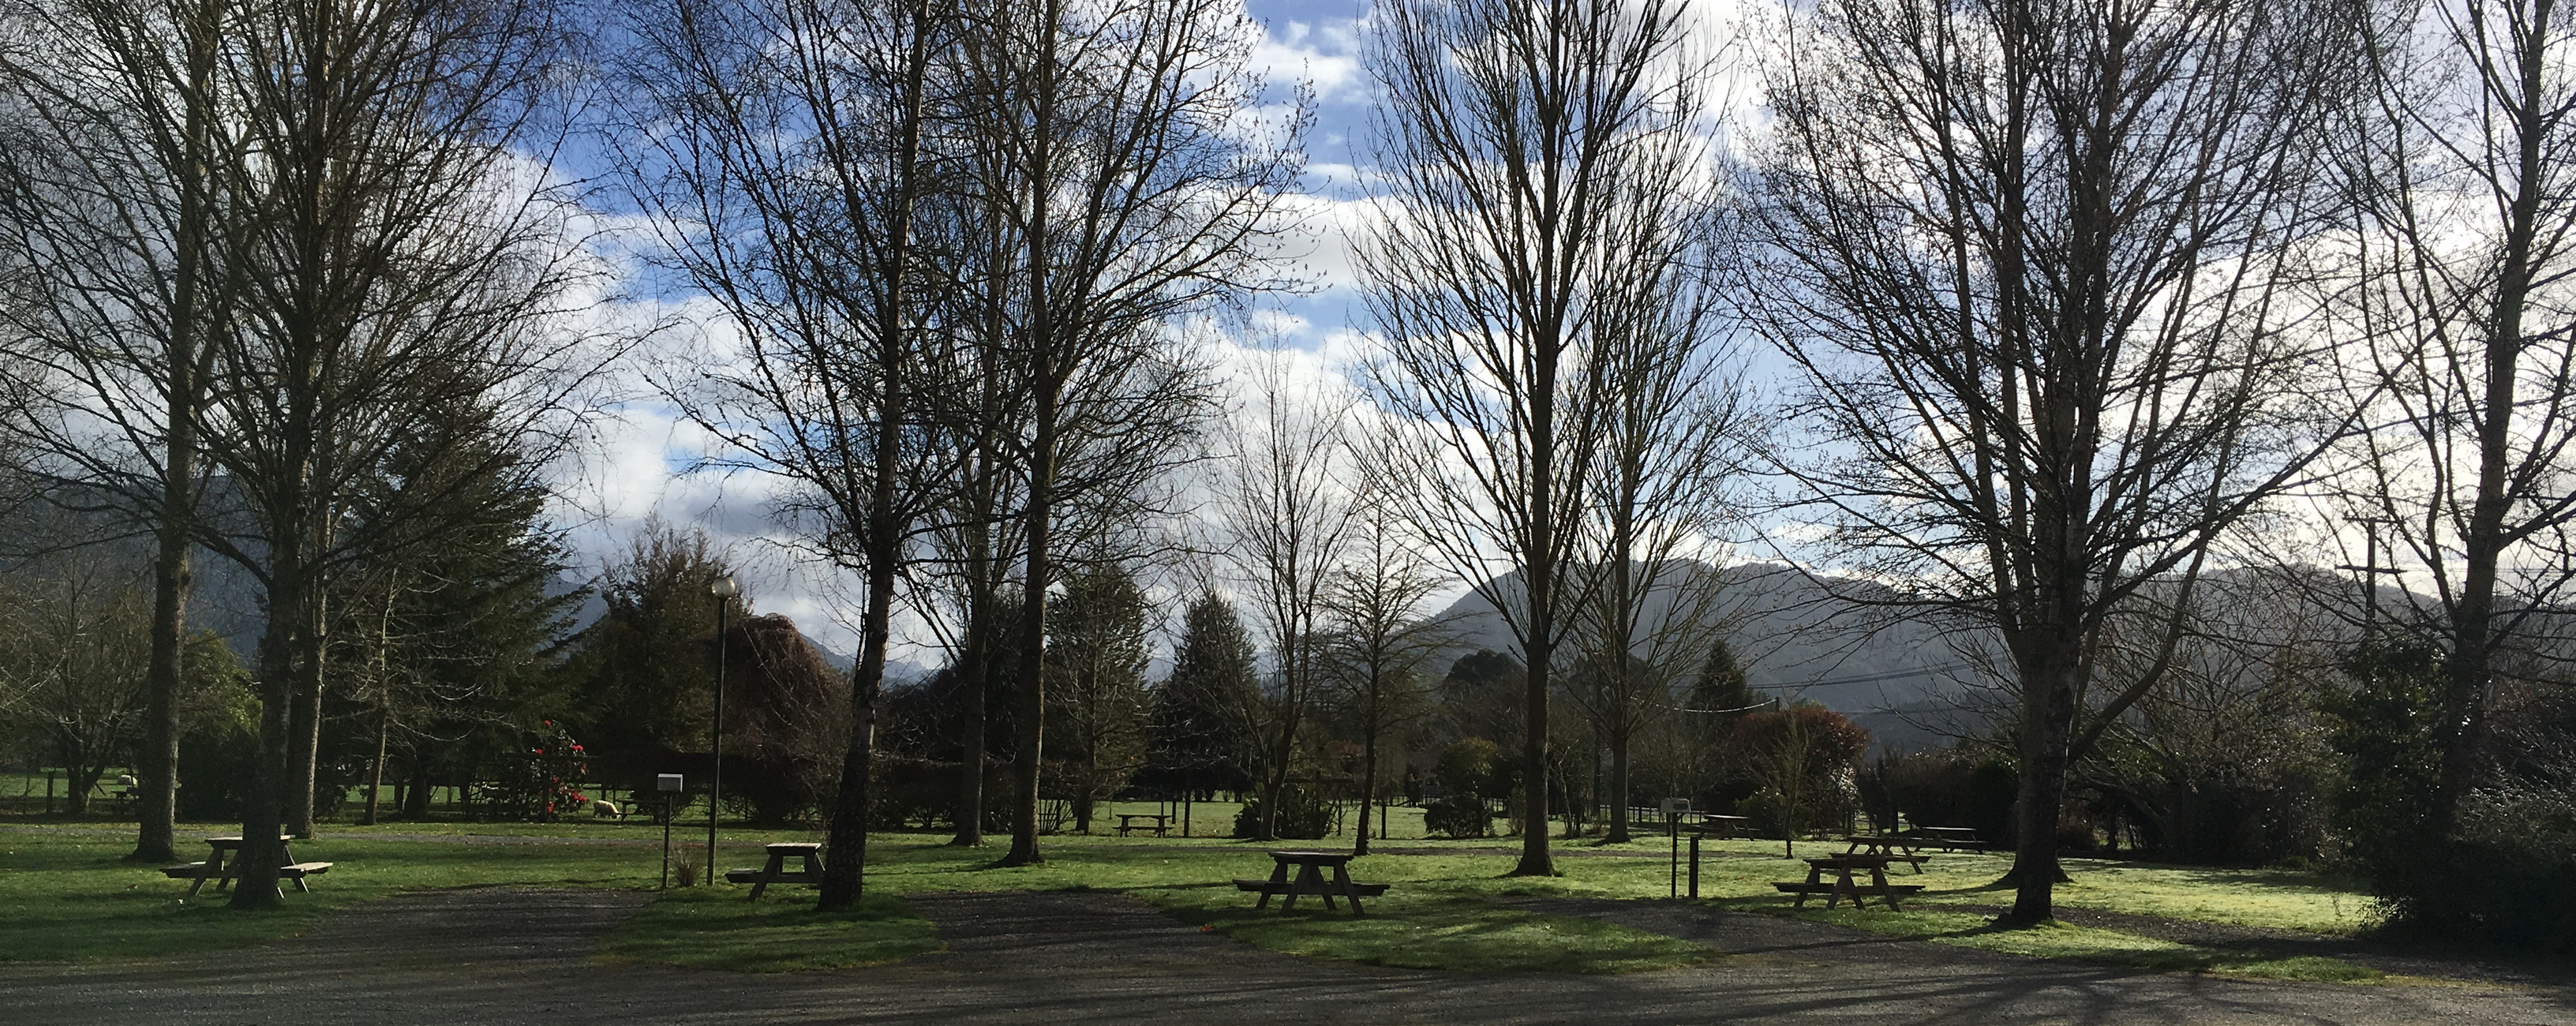 Holiday Parks in Tasman Region